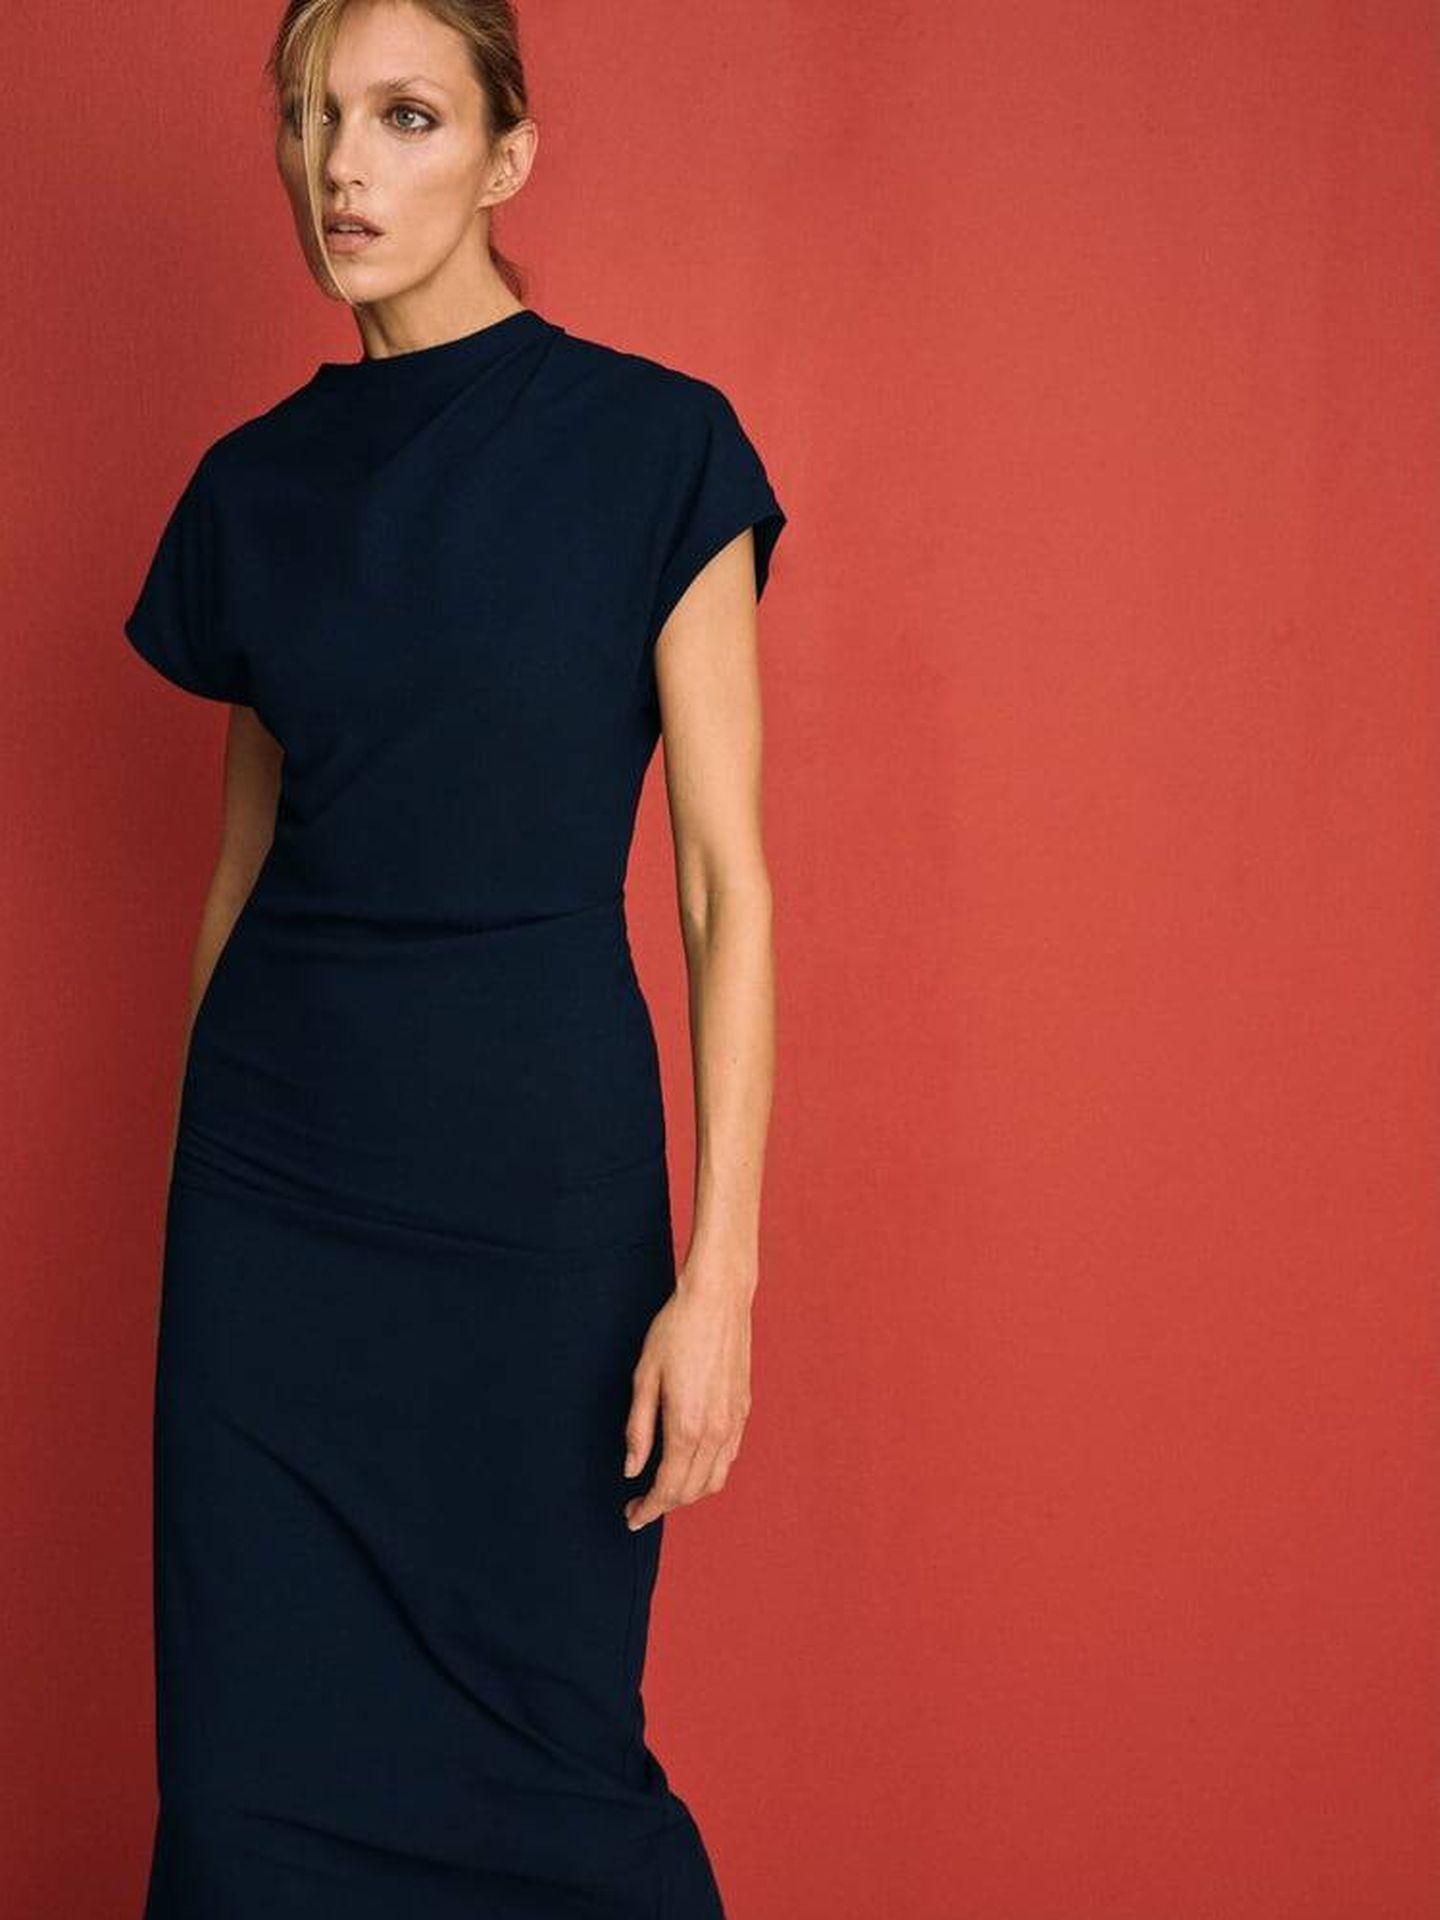 Leer cupón equilibrar El vestido de Zara que quieren comprar las mujeres de 20 a 60 años (y más)